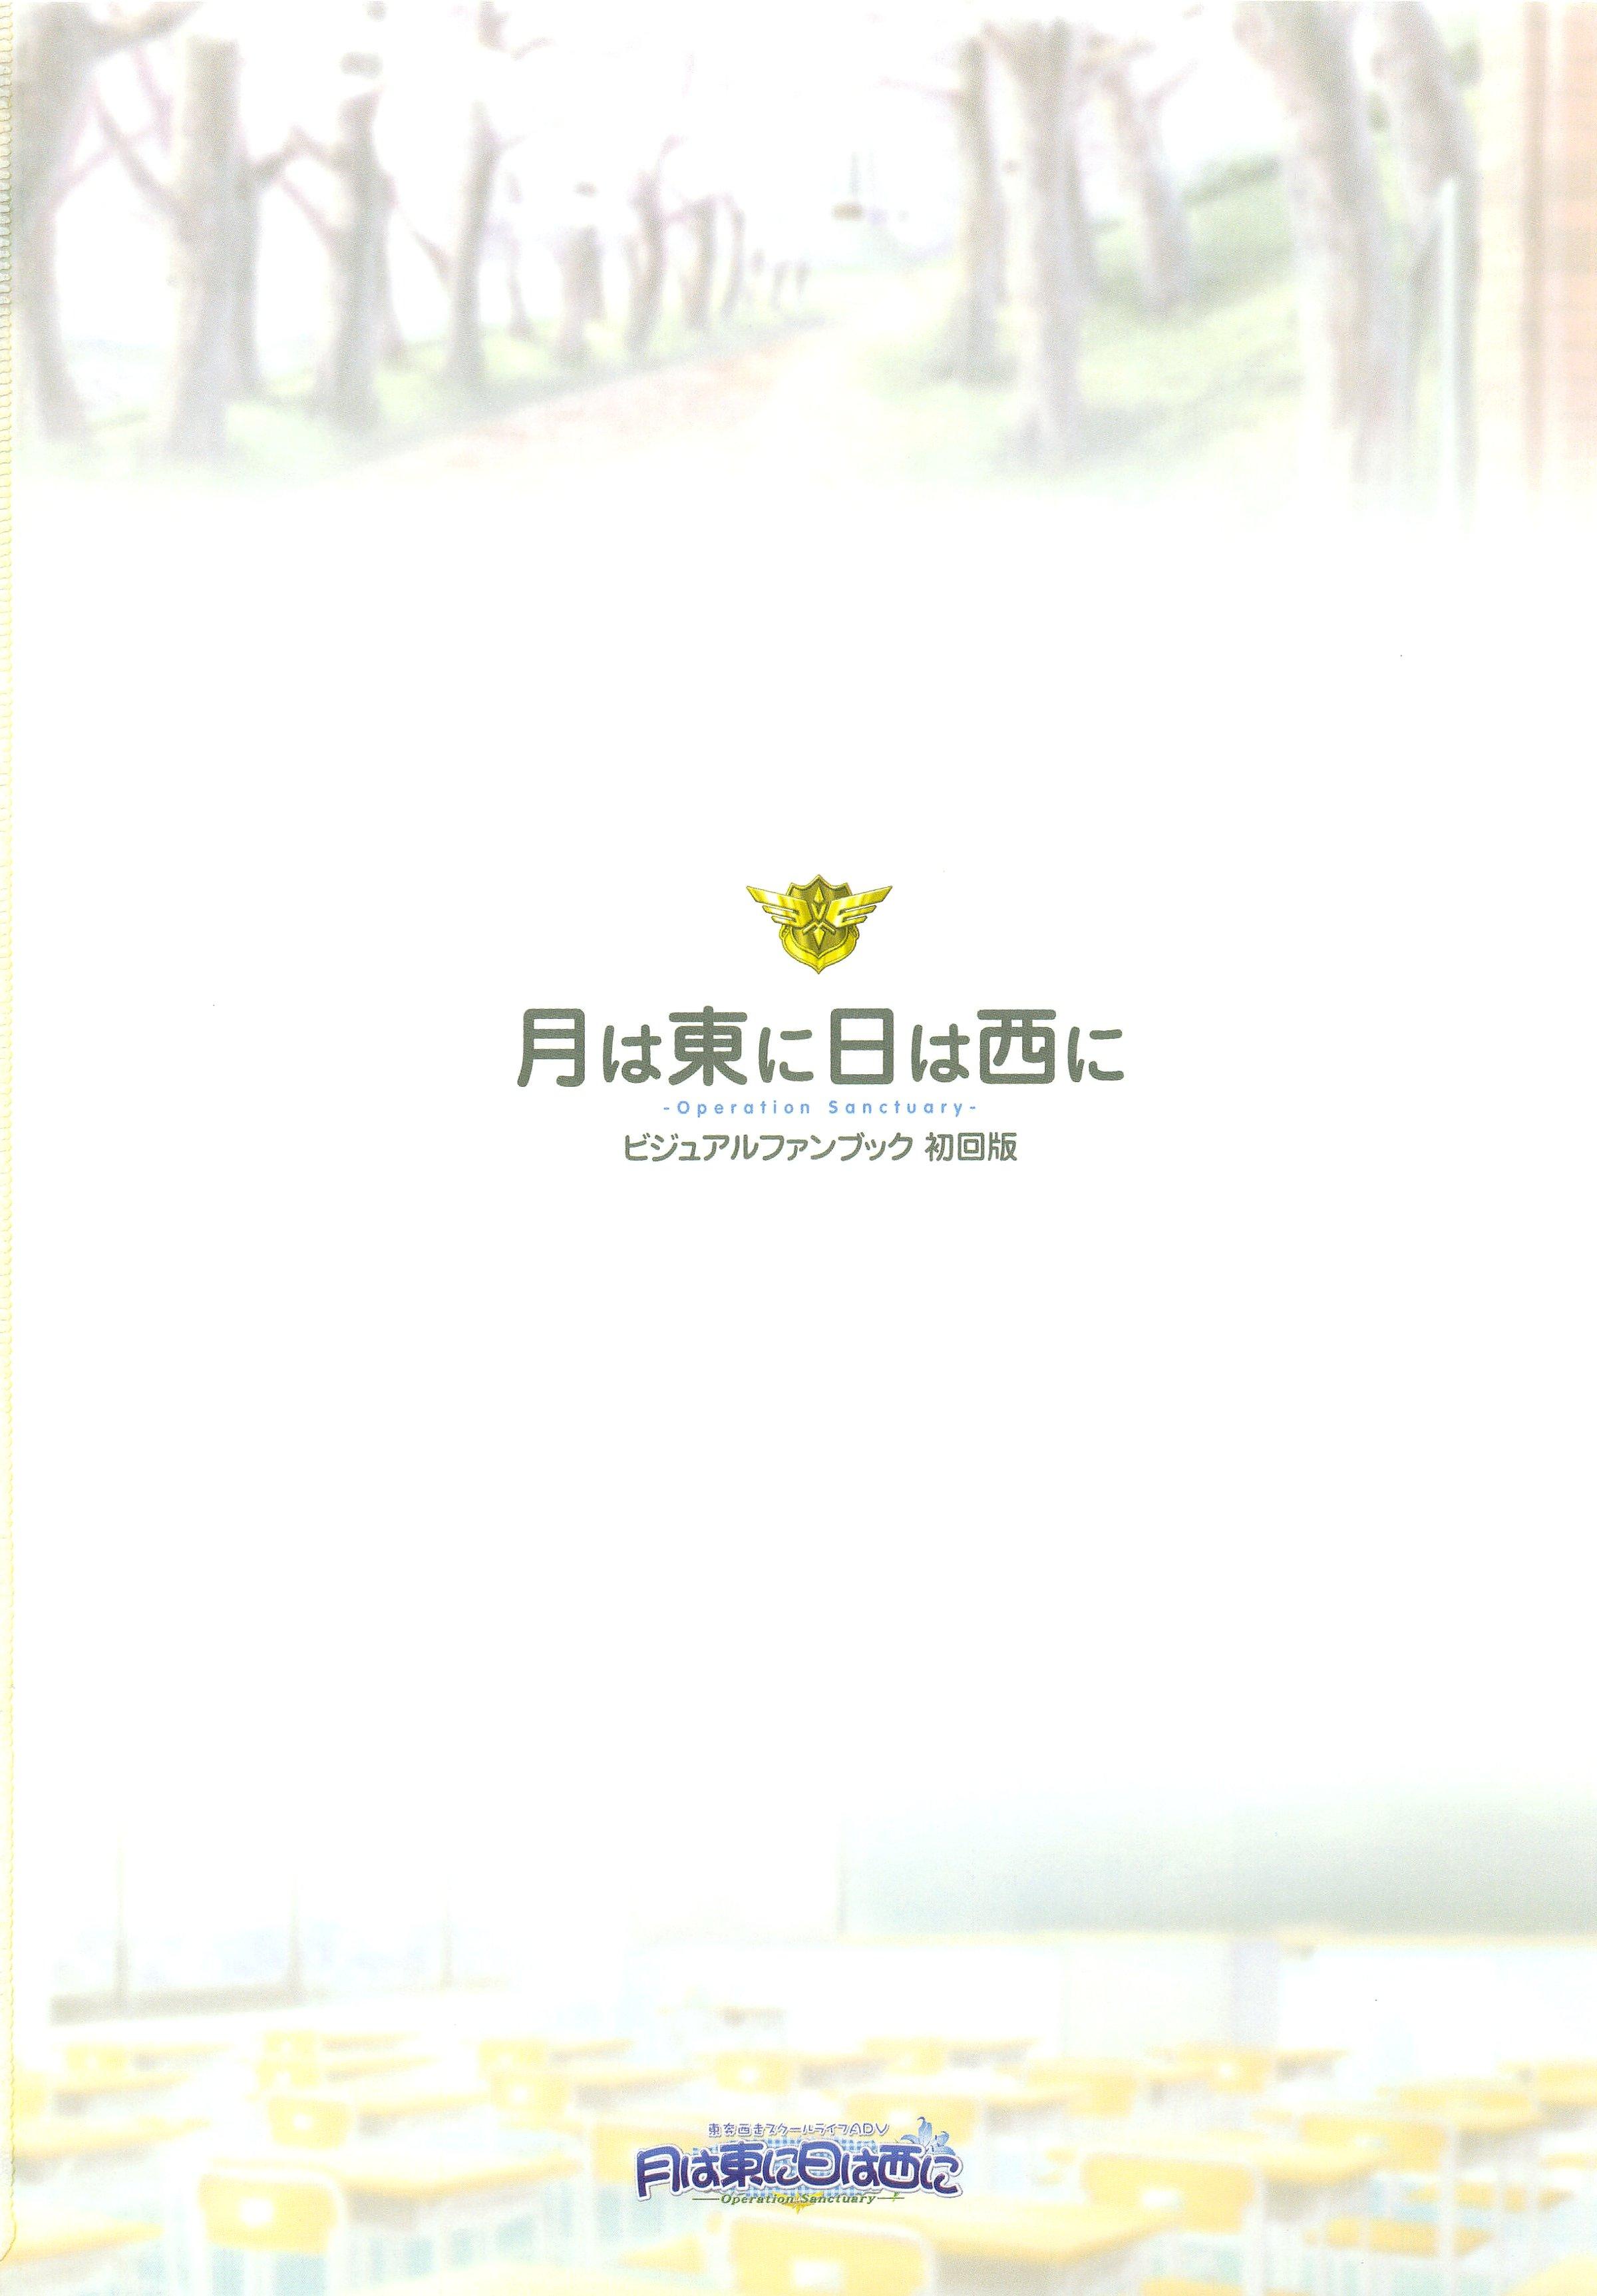 Tsuki wa Higashi ni Hi wa Nishi ni ～ Operation Sanctuary ～ Visual Fan Book 6